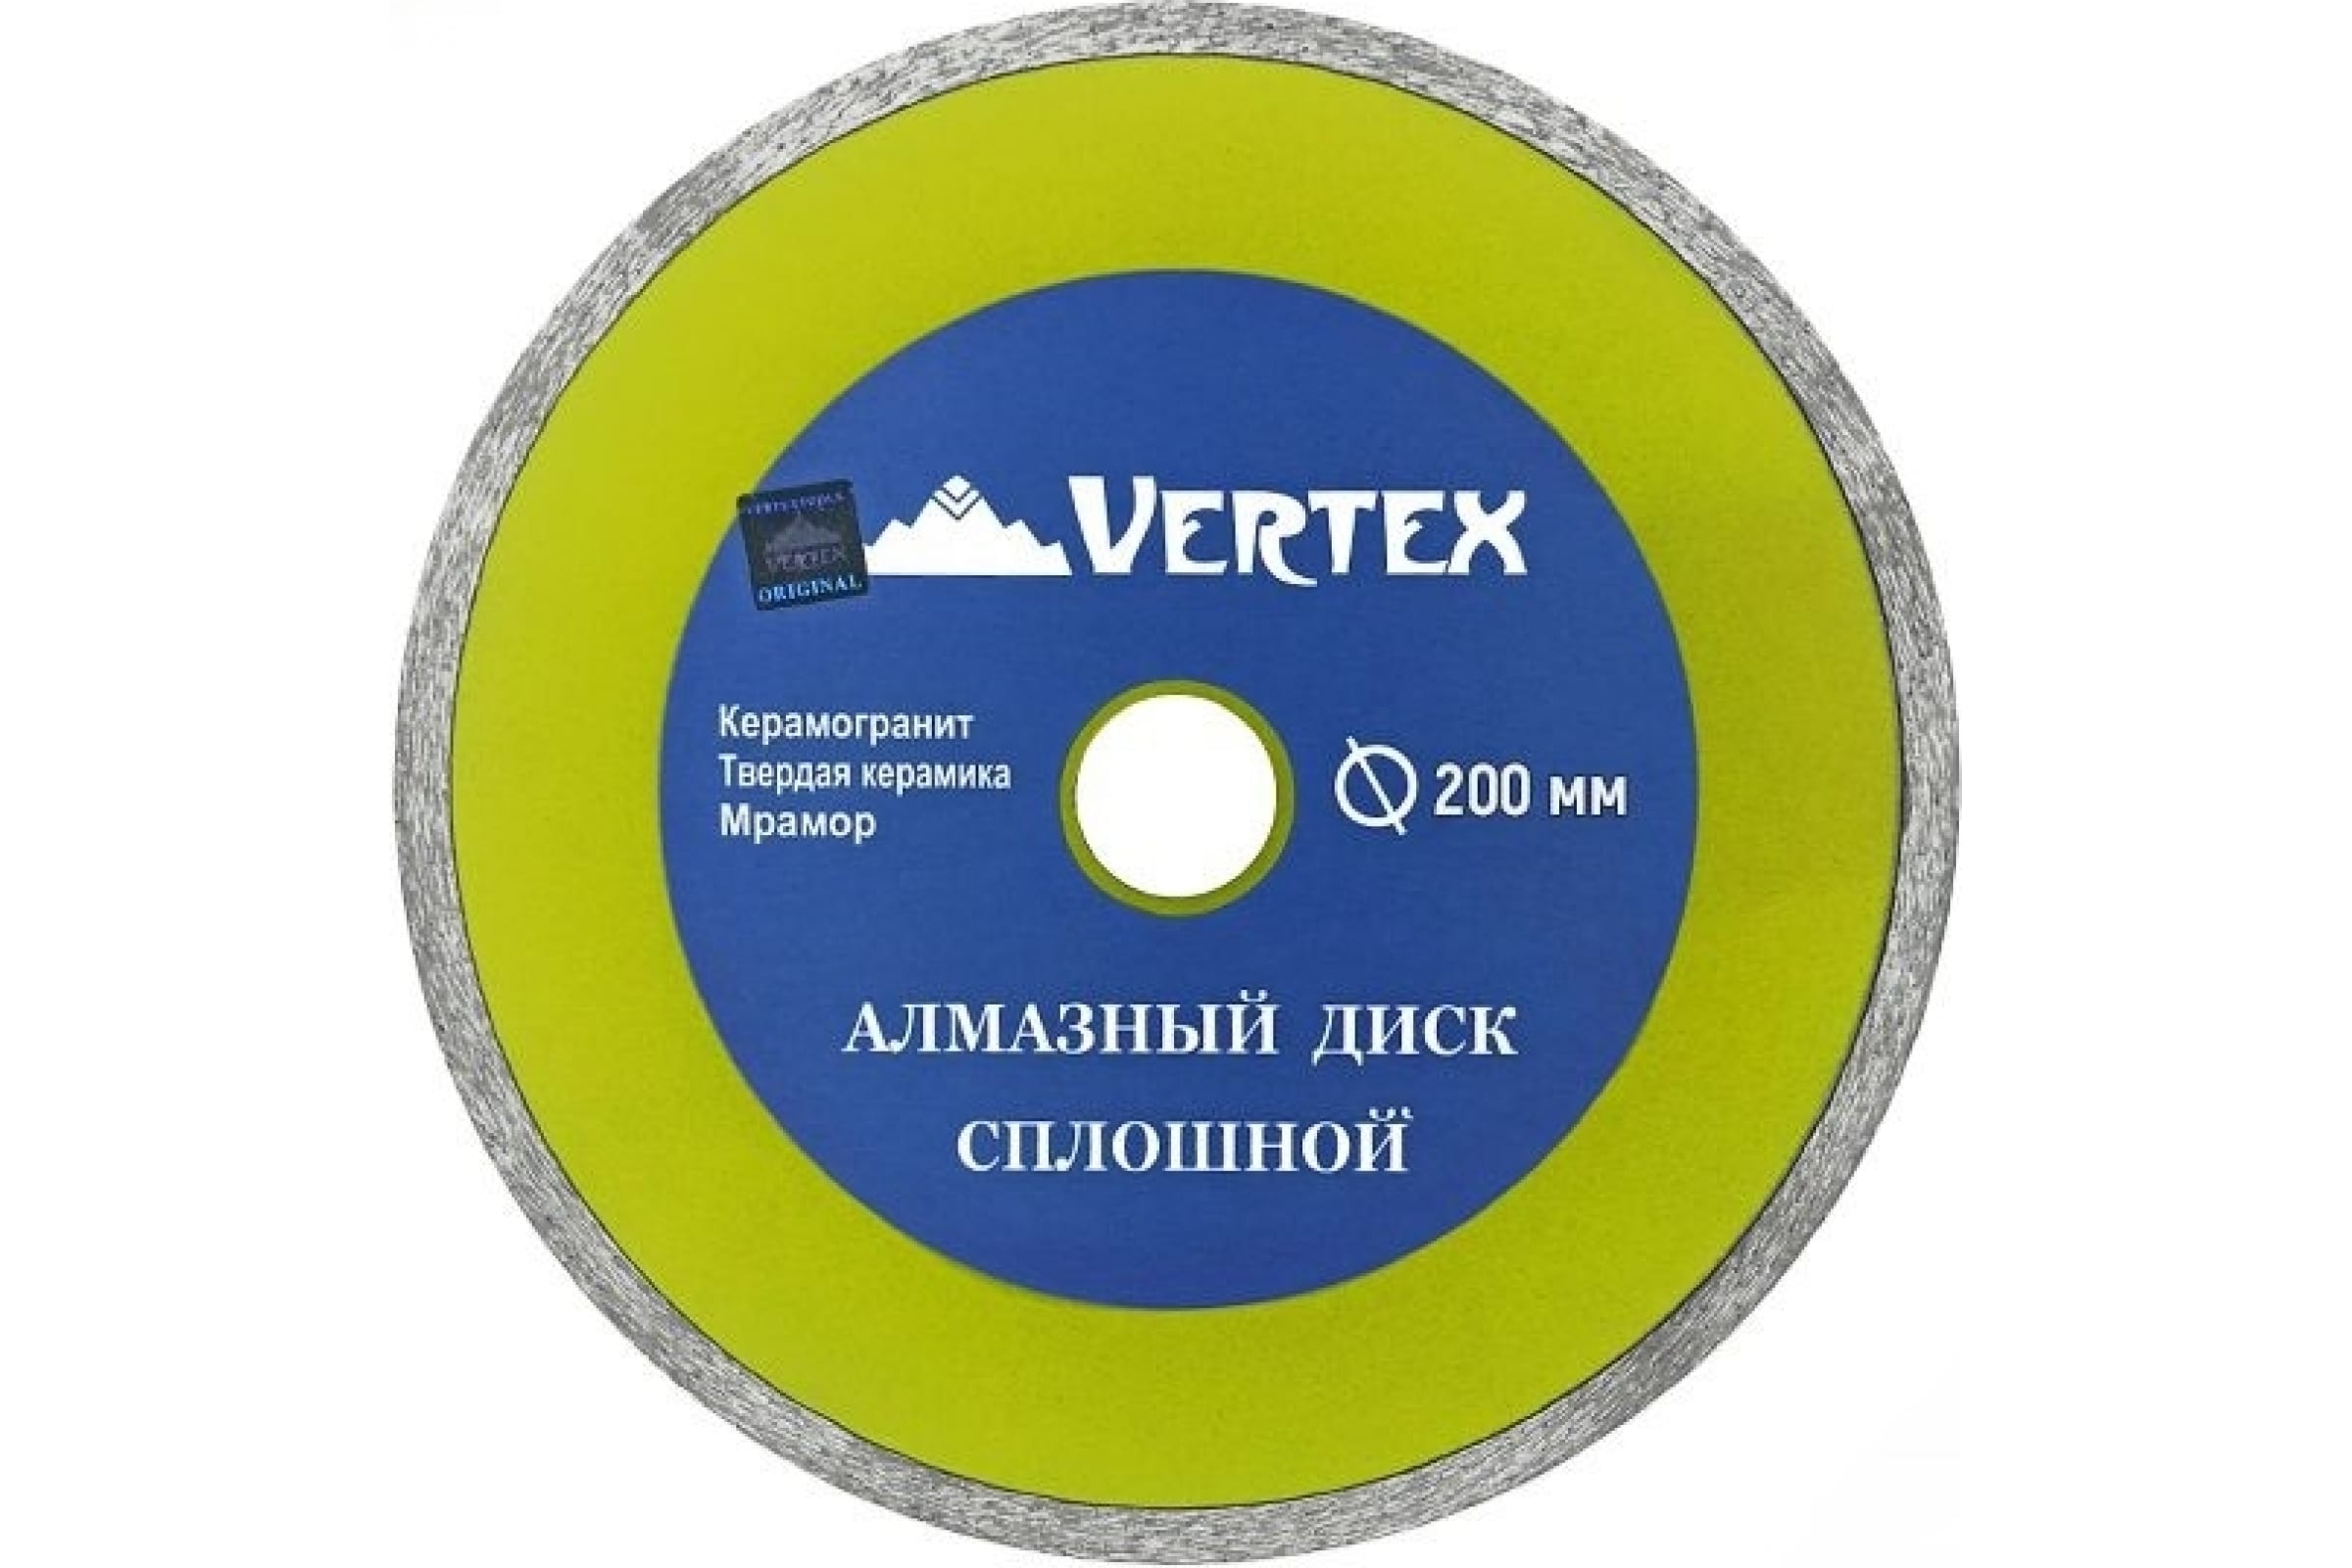 фото Vertextools диск алмазный 200мм сплошной для плиткореза 04-200-6